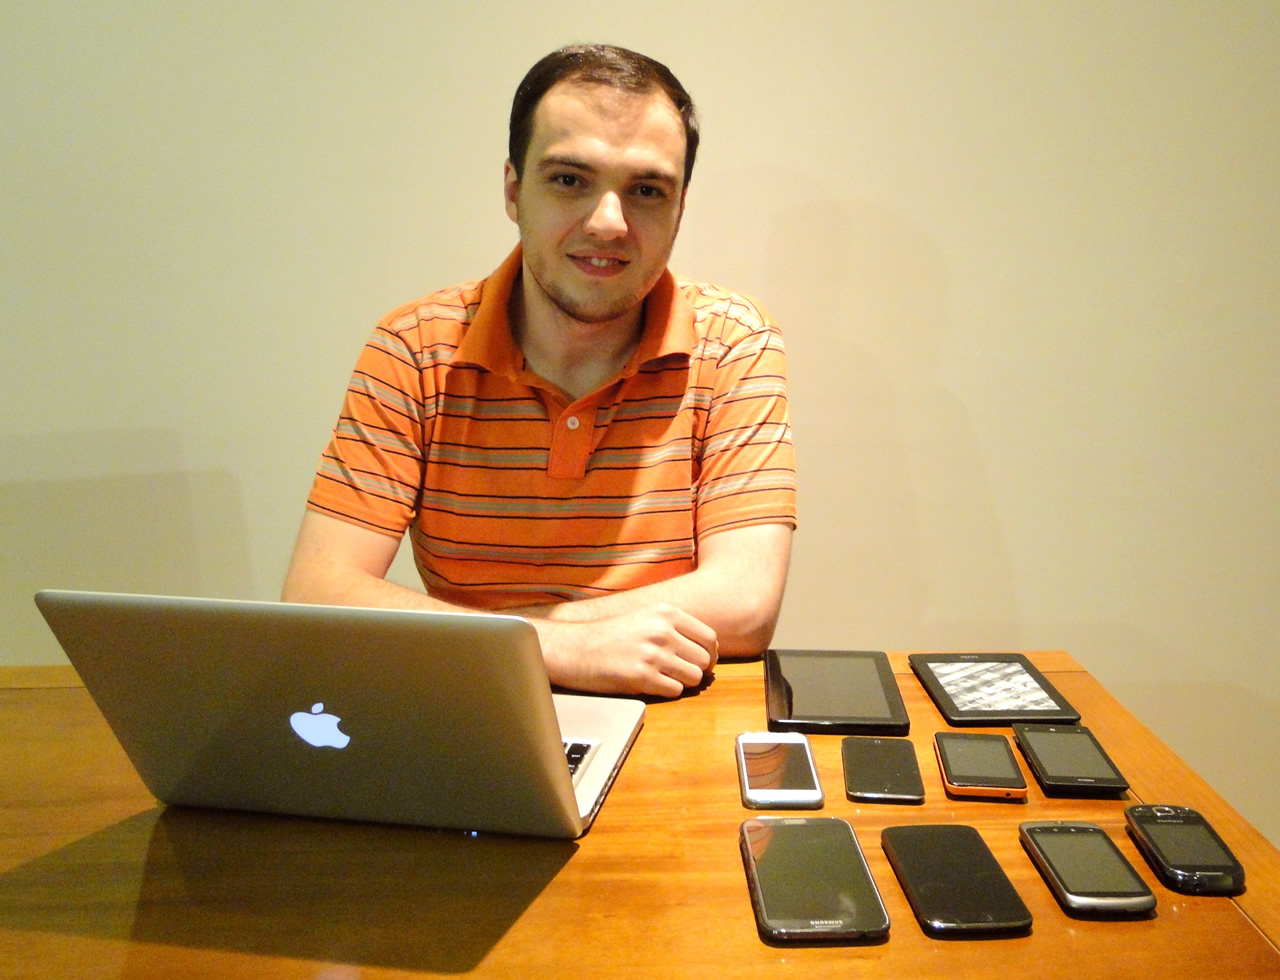 Setup do Sérgio Lopes: MacBook e dispositivos móveis.